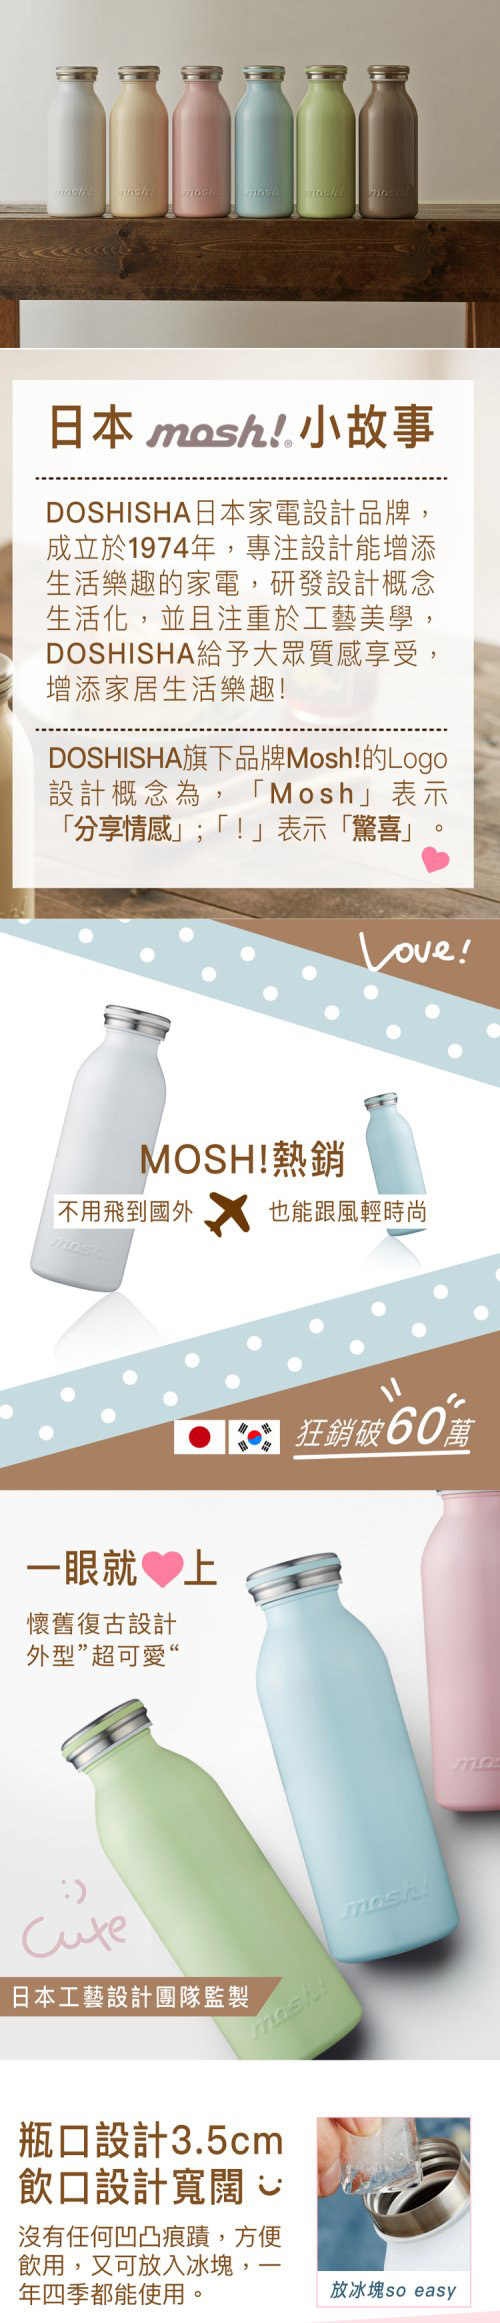 日本 MOSH! 350ML保溫瓶 薄荷綠